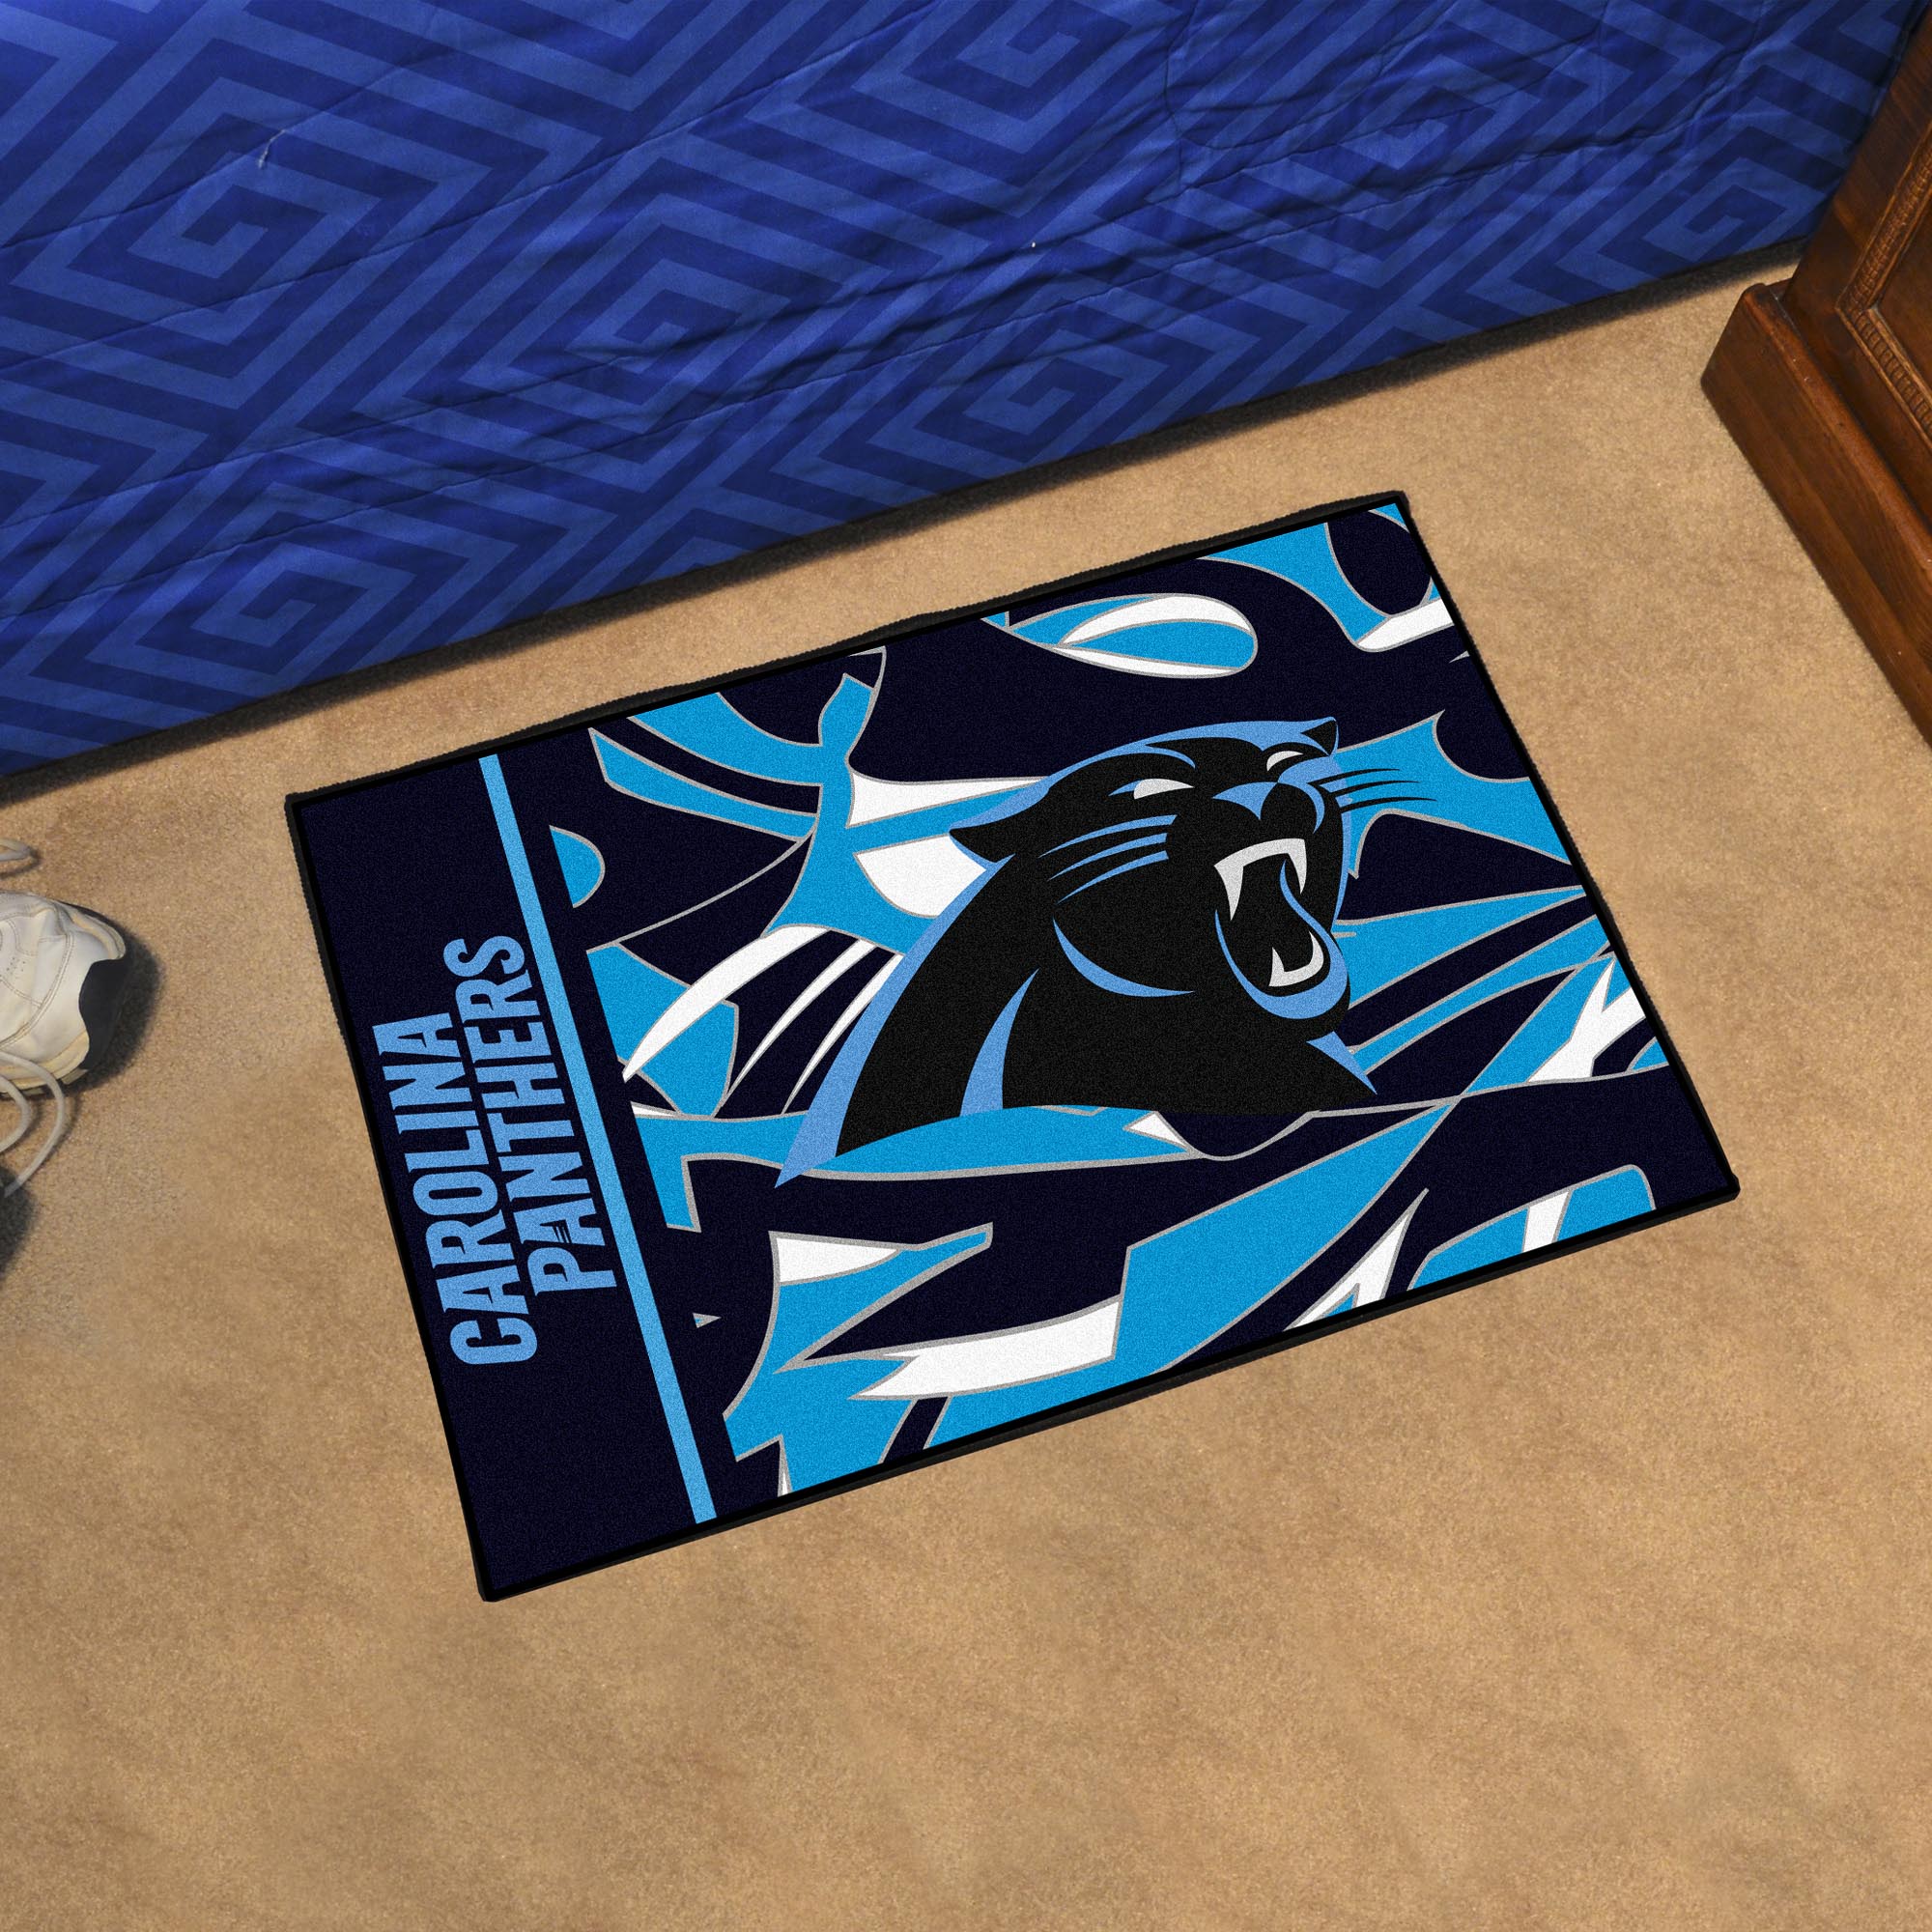 Carolina Panthers Quick Snap Starter Doormat - 19x30